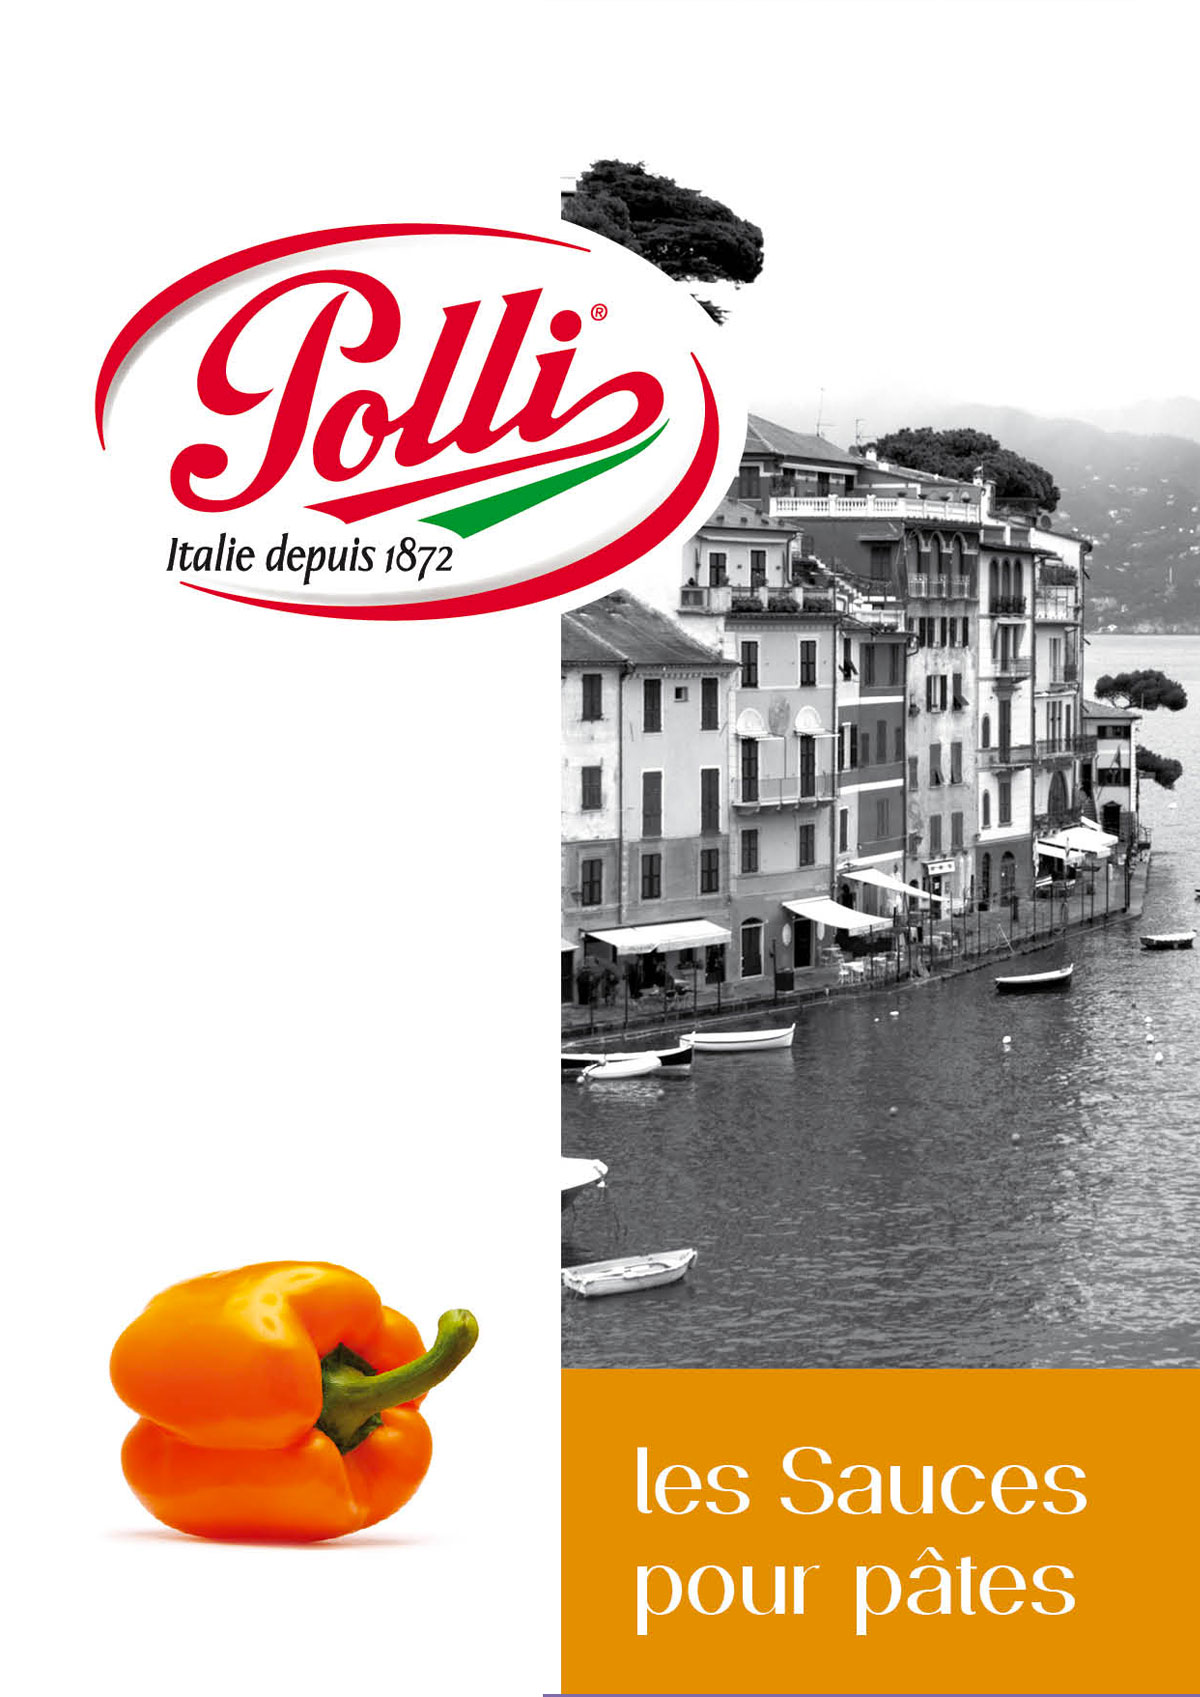 Polli - Agence Colibri, Design, Publicité, Web - Accompagnement stratégique et campagne de communication - 9